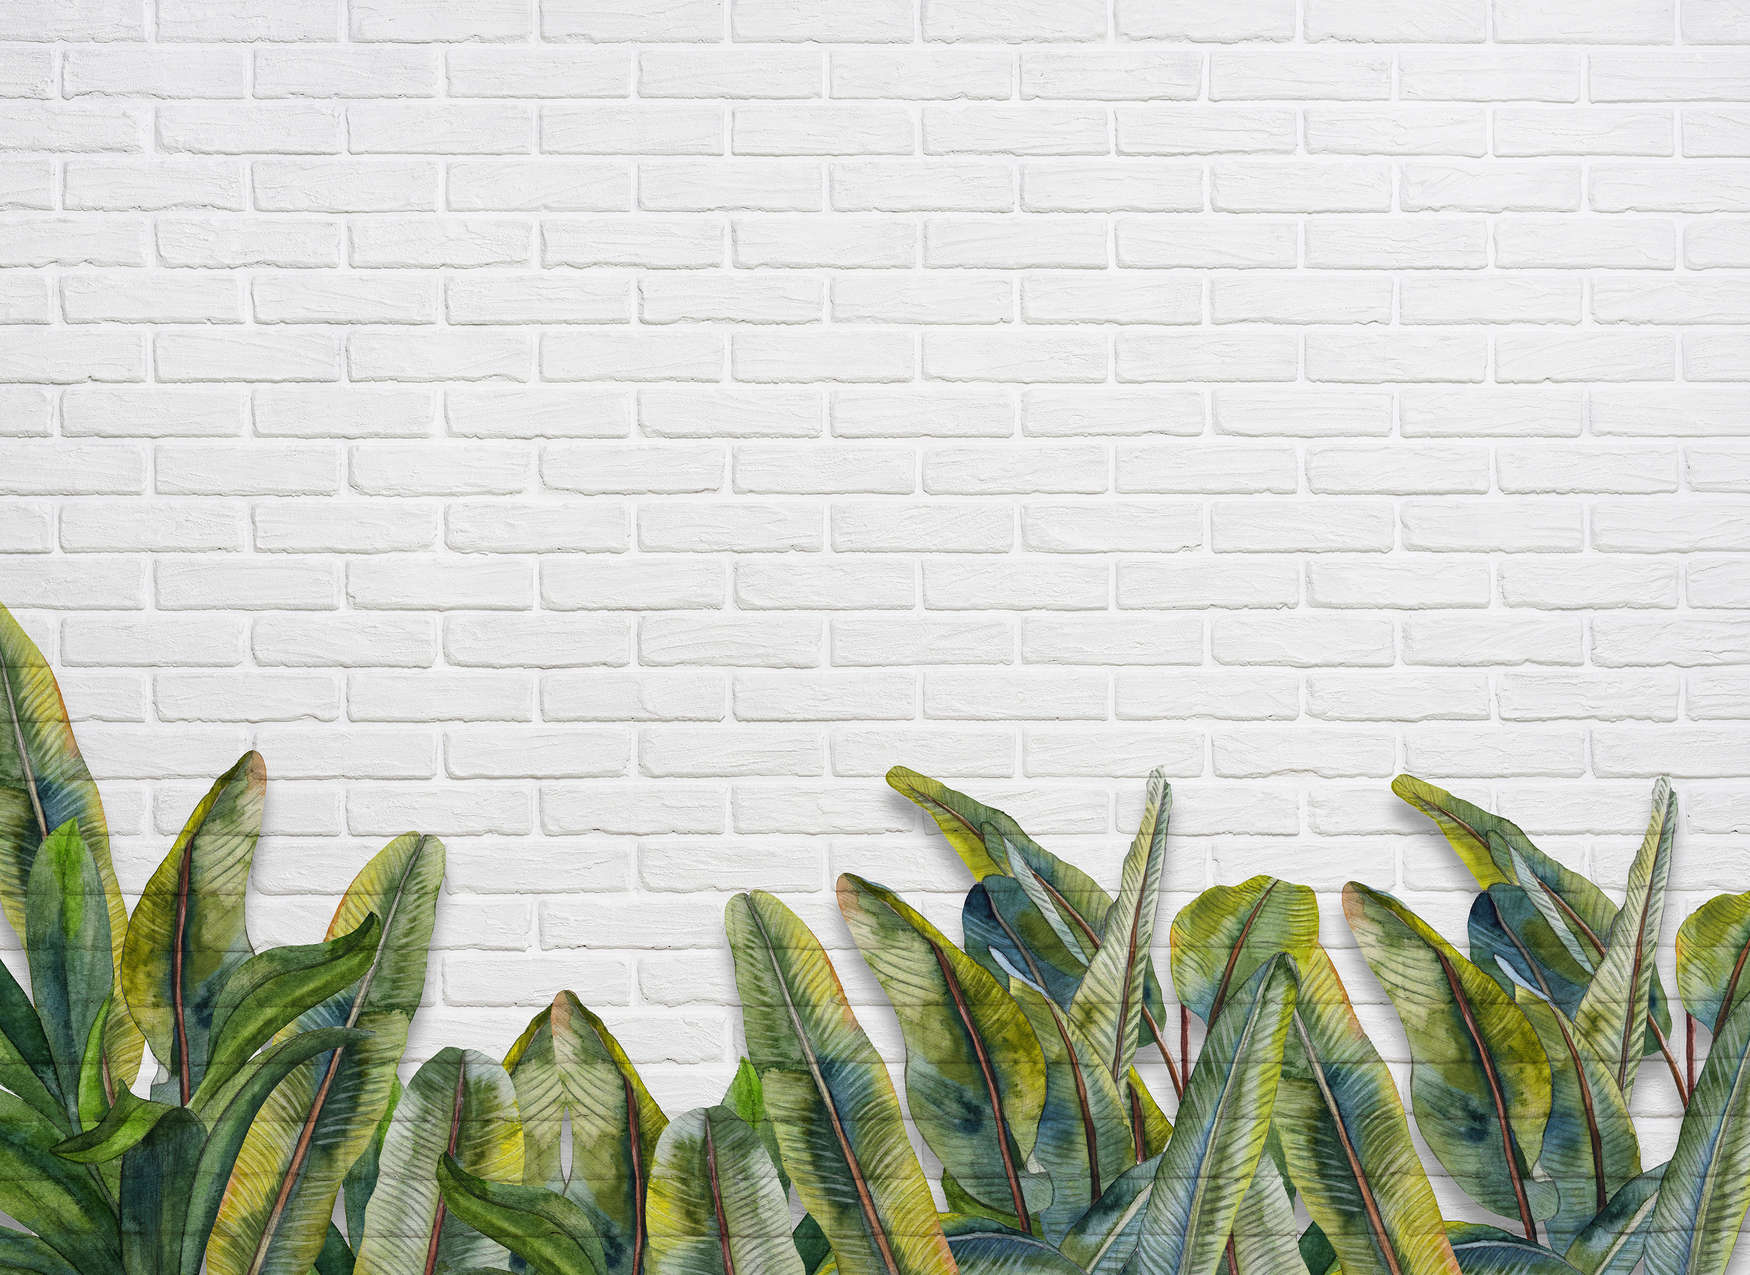             Mural con hojas frente a una pared de ladrillos blancos - Verde, Blanco
        